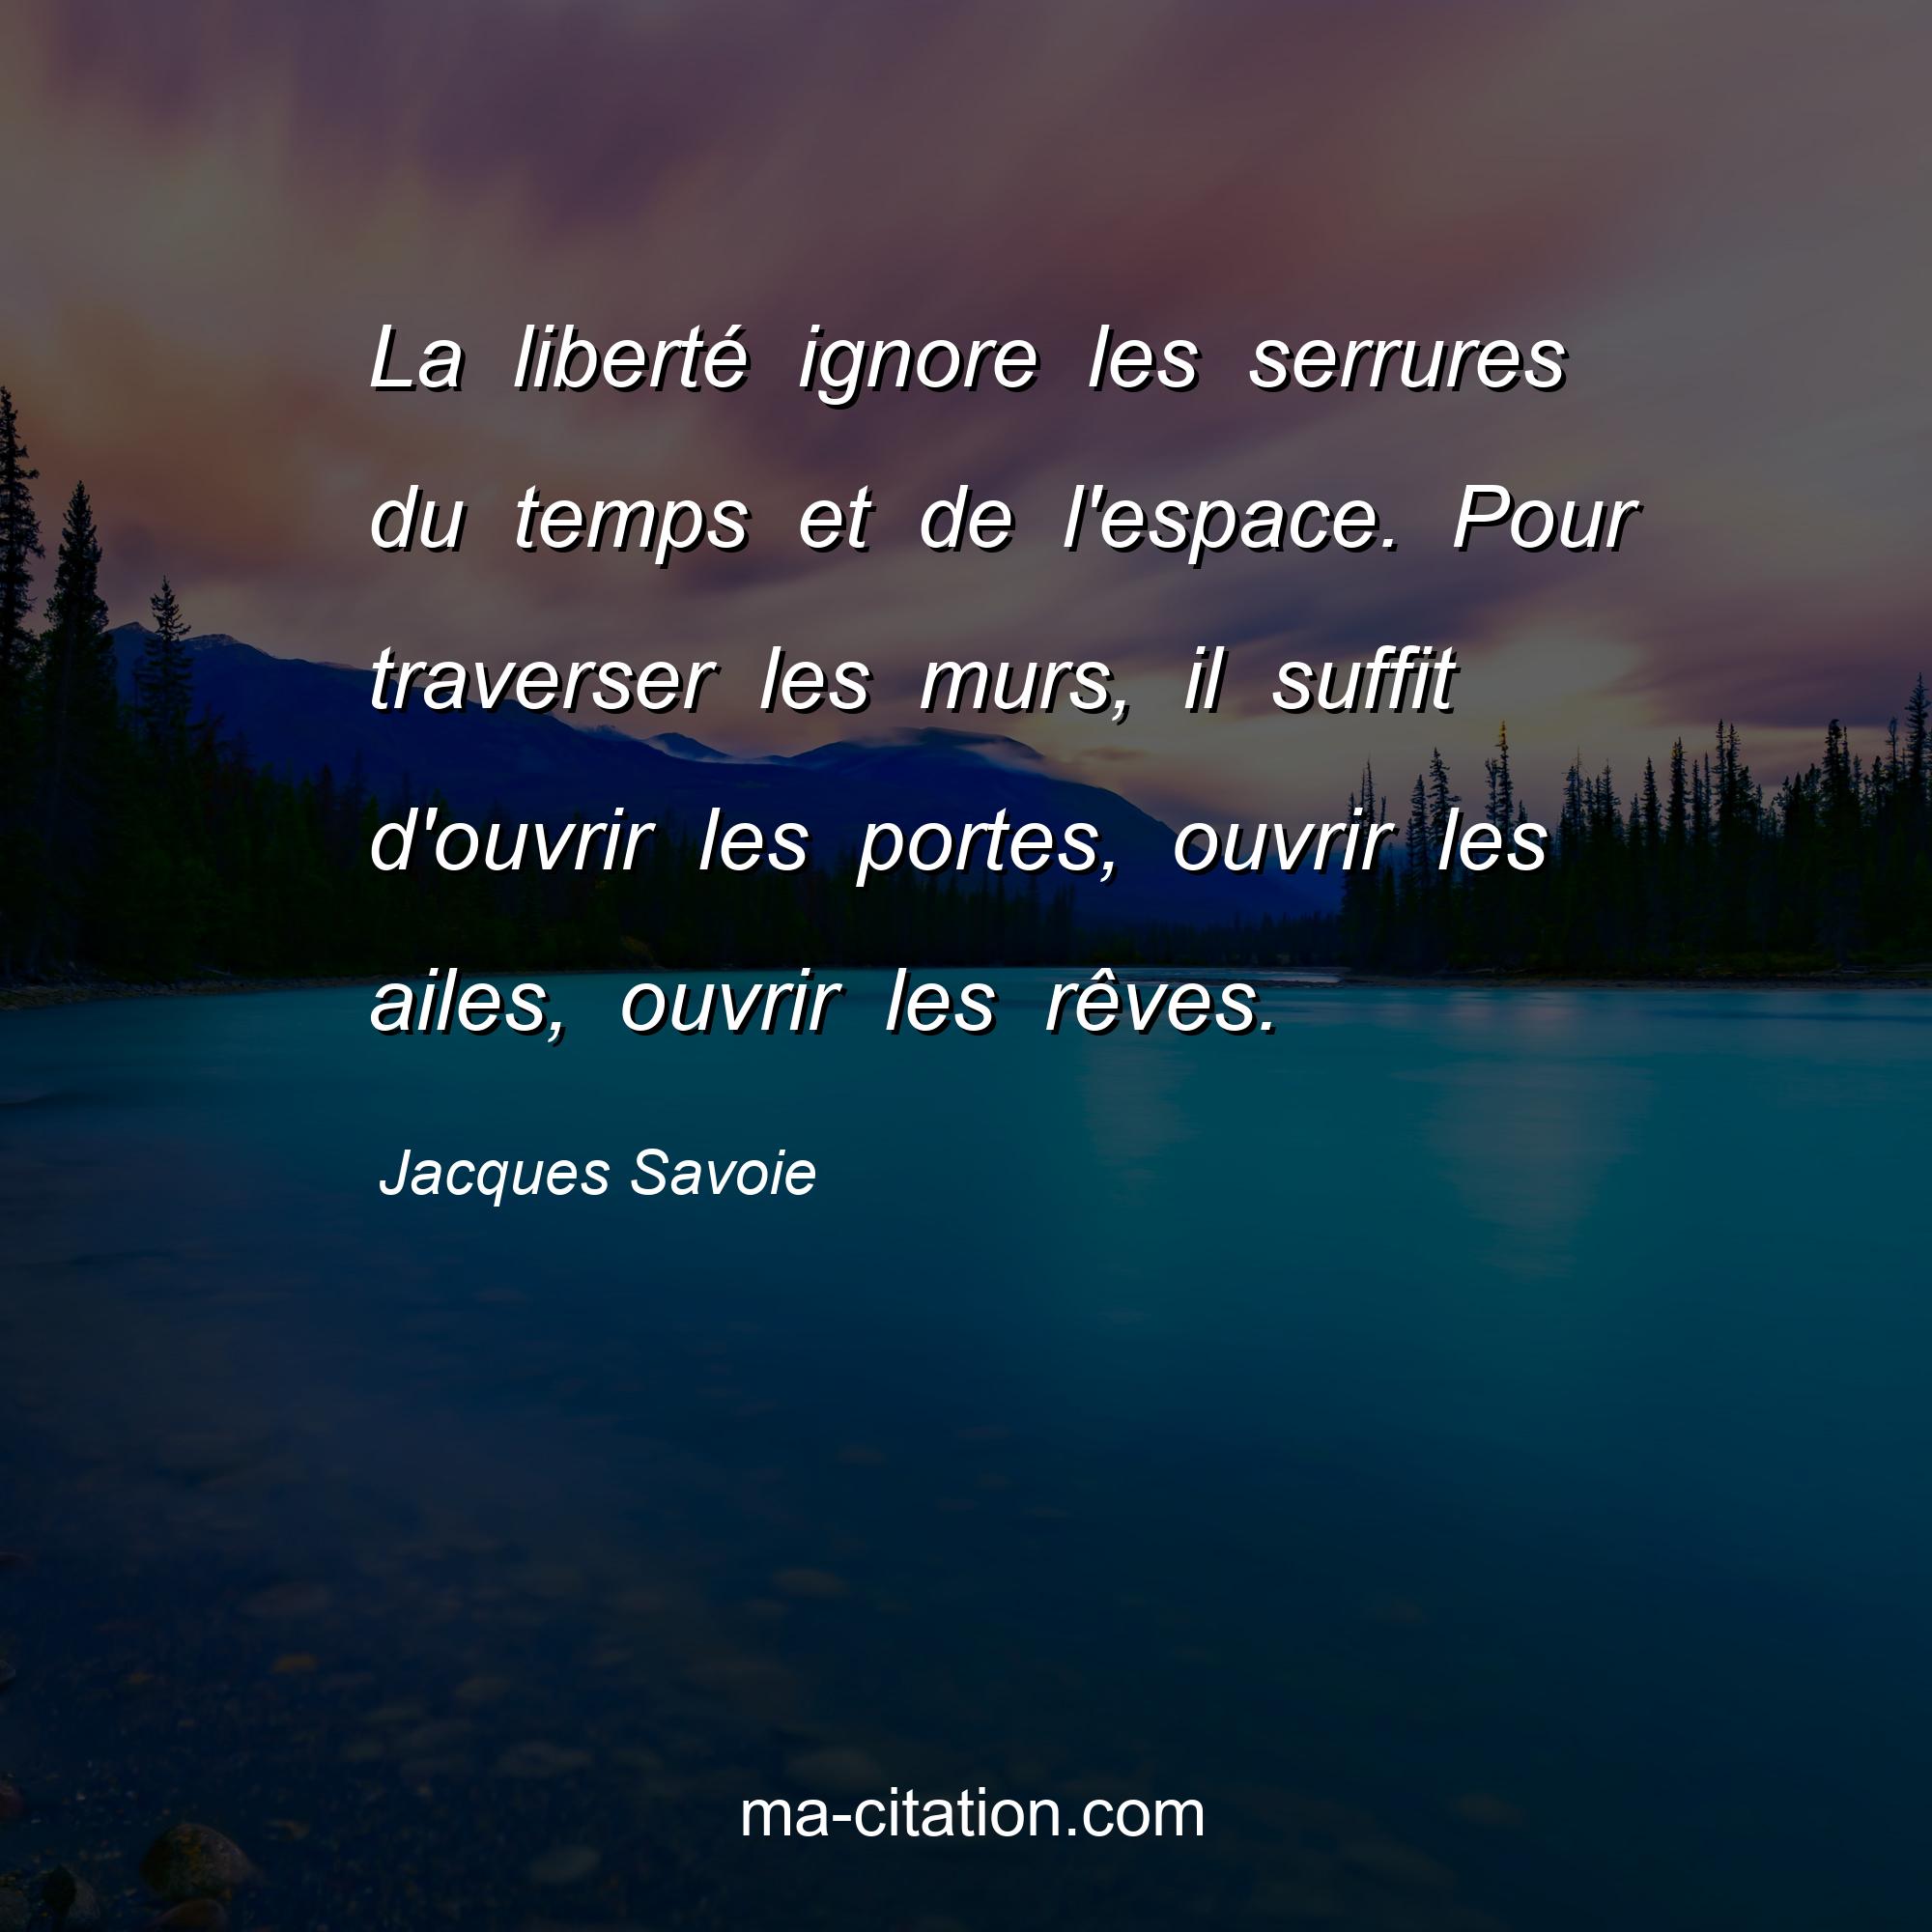 Jacques Savoie : La liberté ignore les serrures du temps et de l'espace. Pour traverser les murs, il suffit d'ouvrir les portes, ouvrir les ailes, ouvrir les rêves.